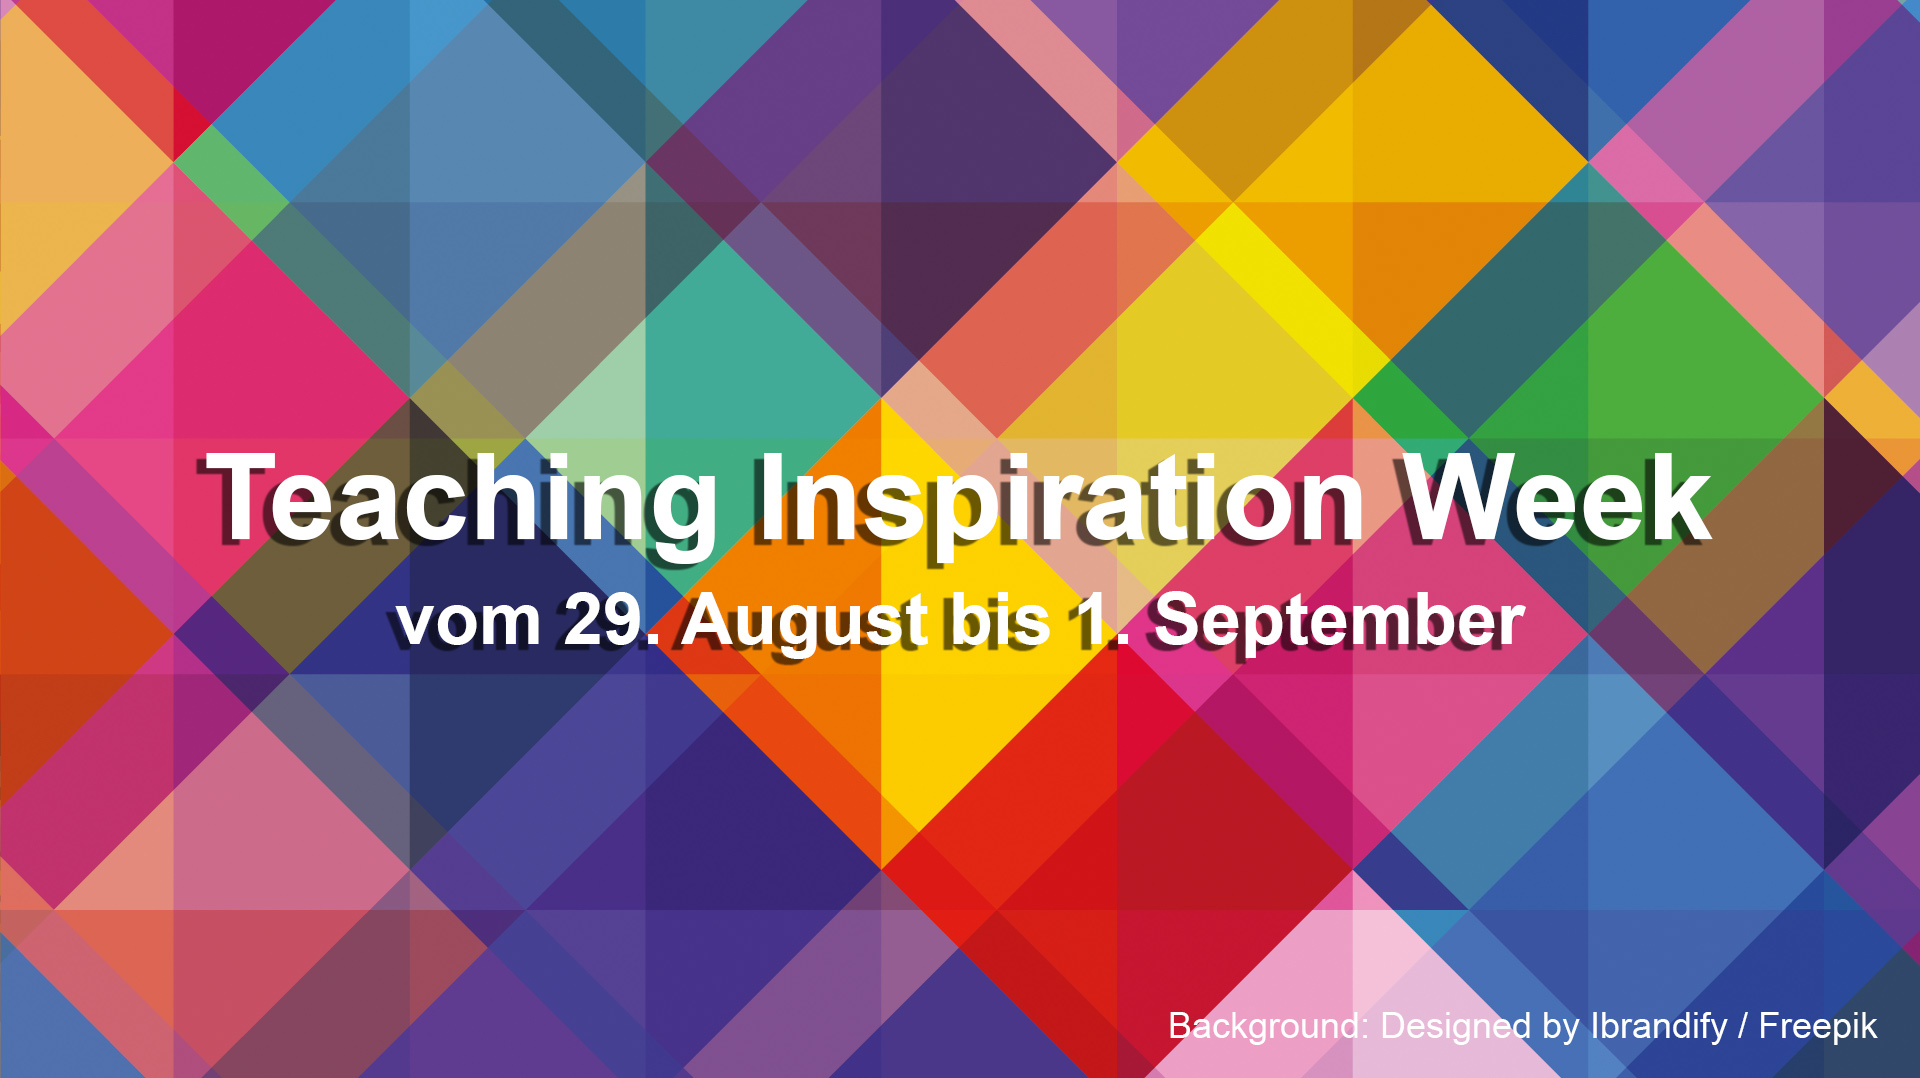 Teaching Inspiration Week 2022